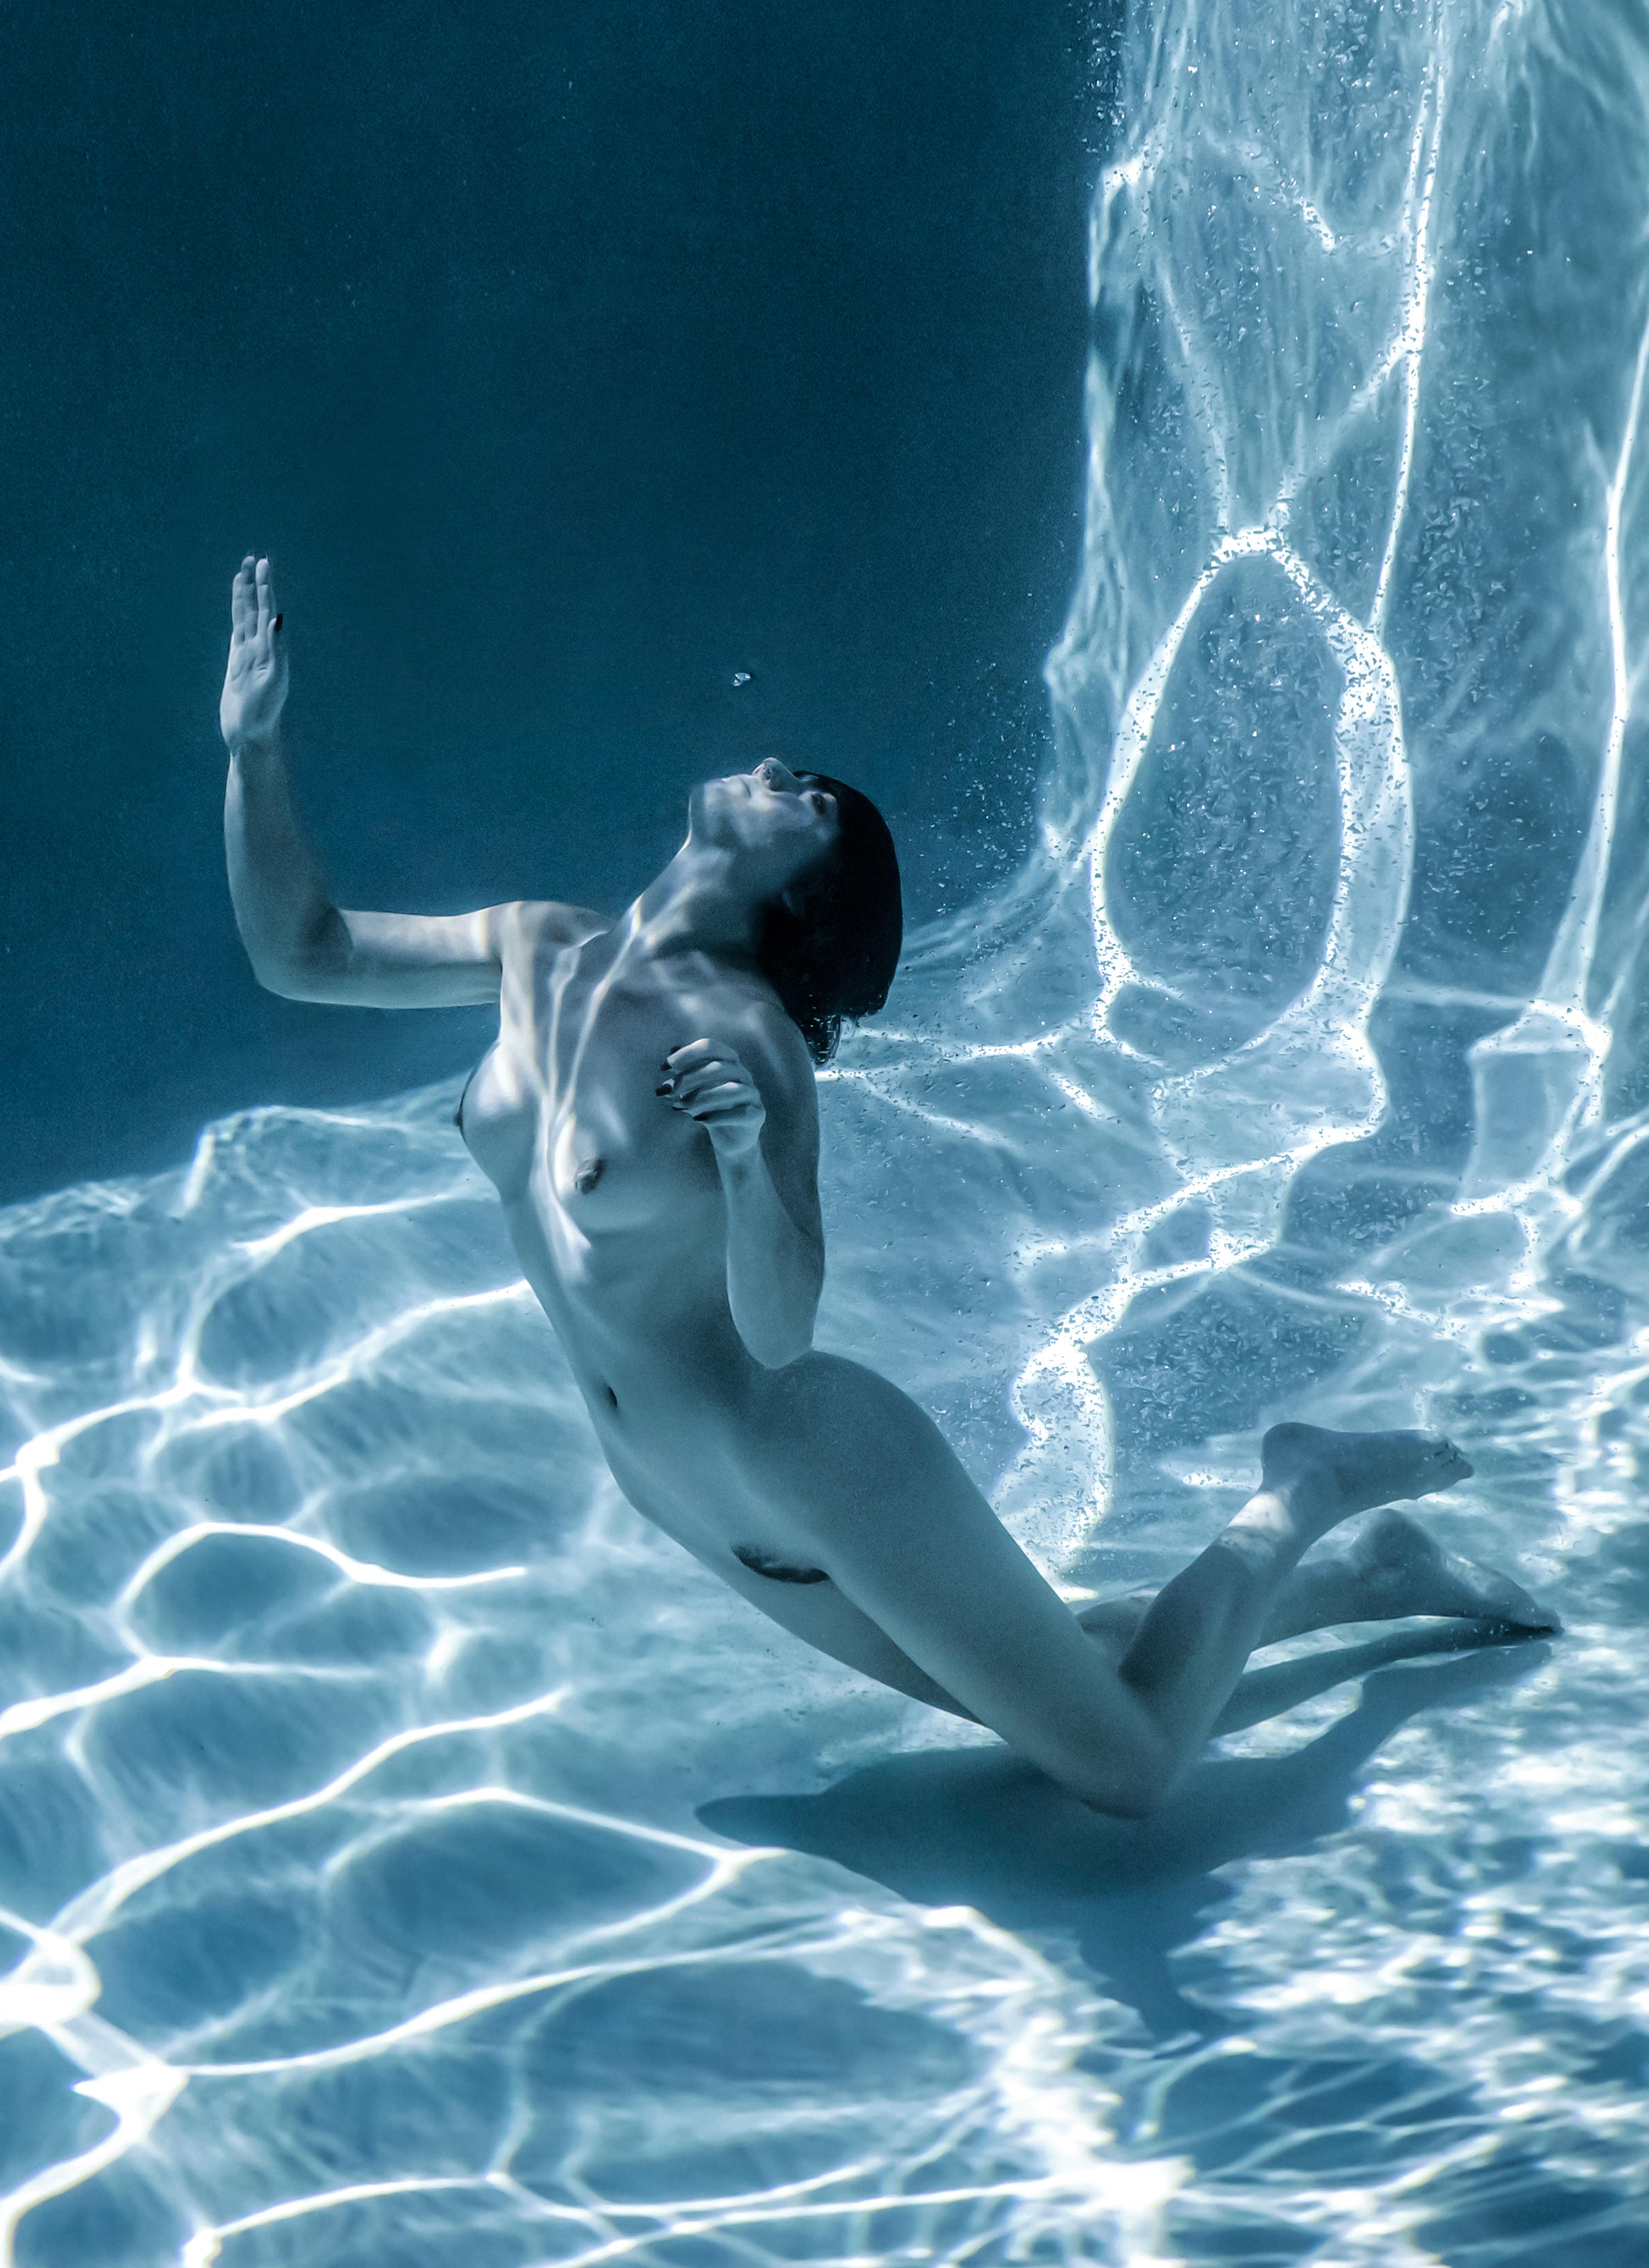 Se Luft  Unterwasser-Nacktfotografie  archivtauglicher Pigmentdruck – Photograph von Alex Sher